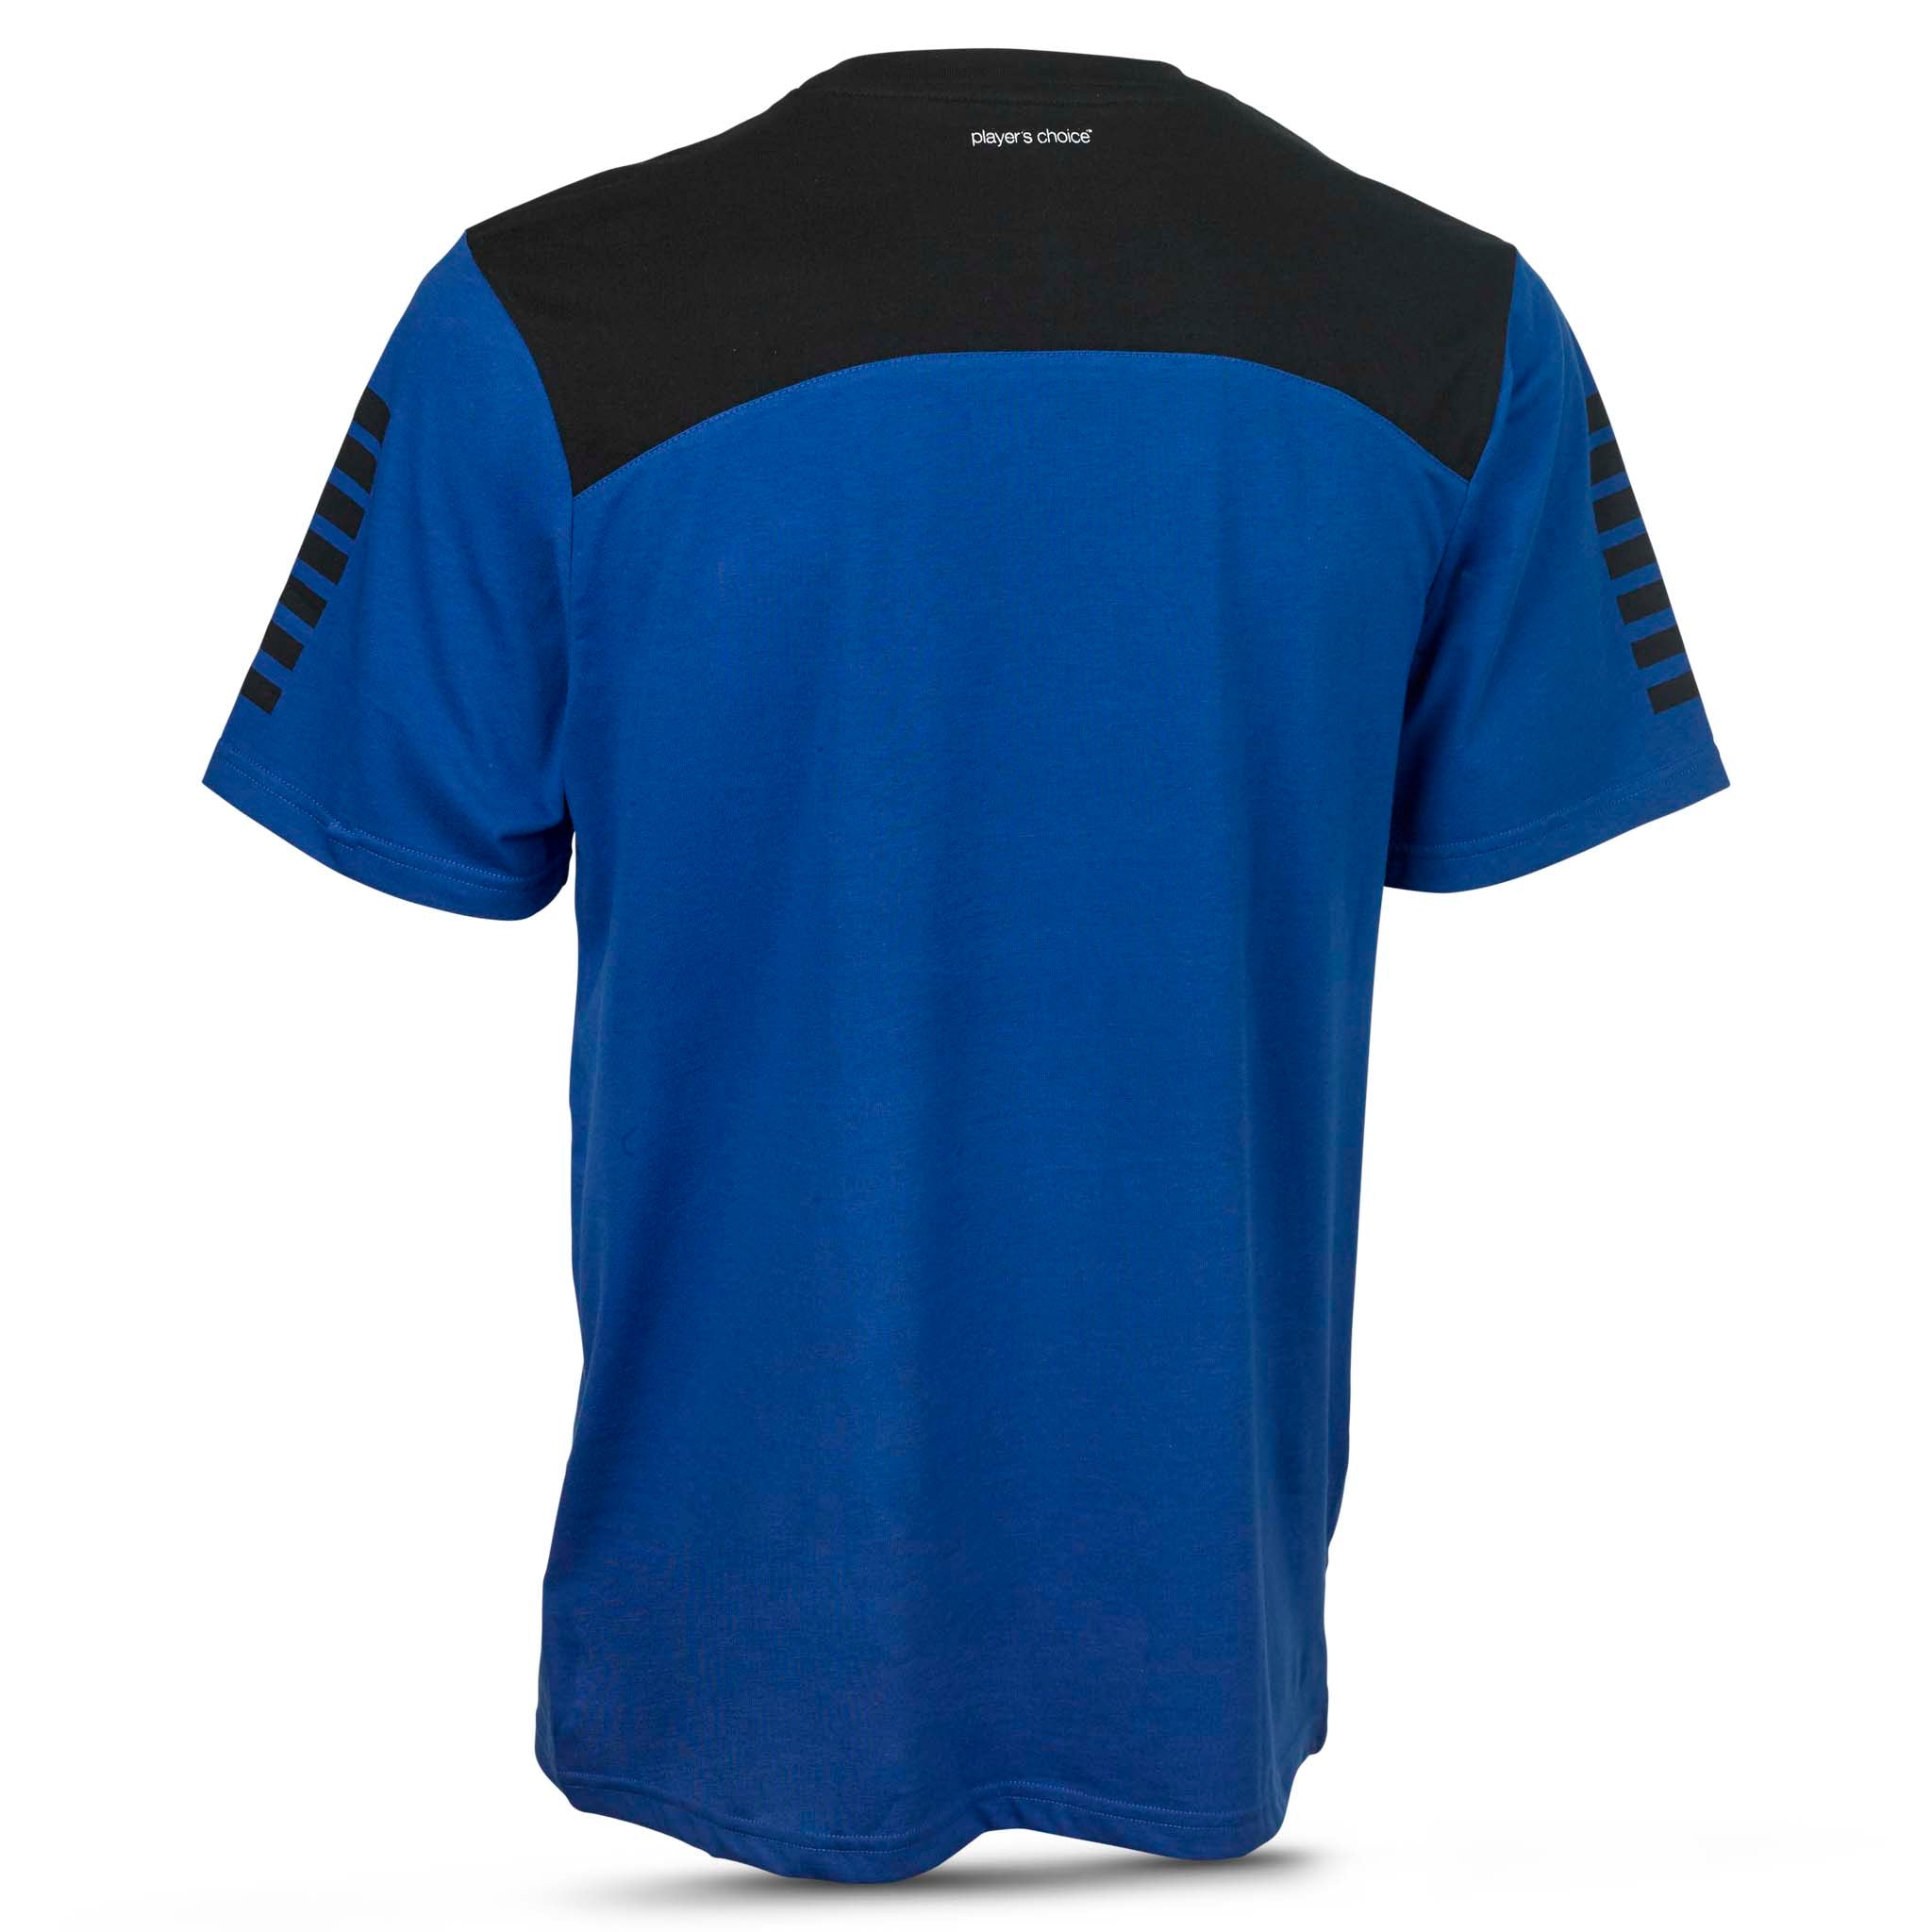 Oxford T-Shirt #farve_blå/sort #farve_blå/sort